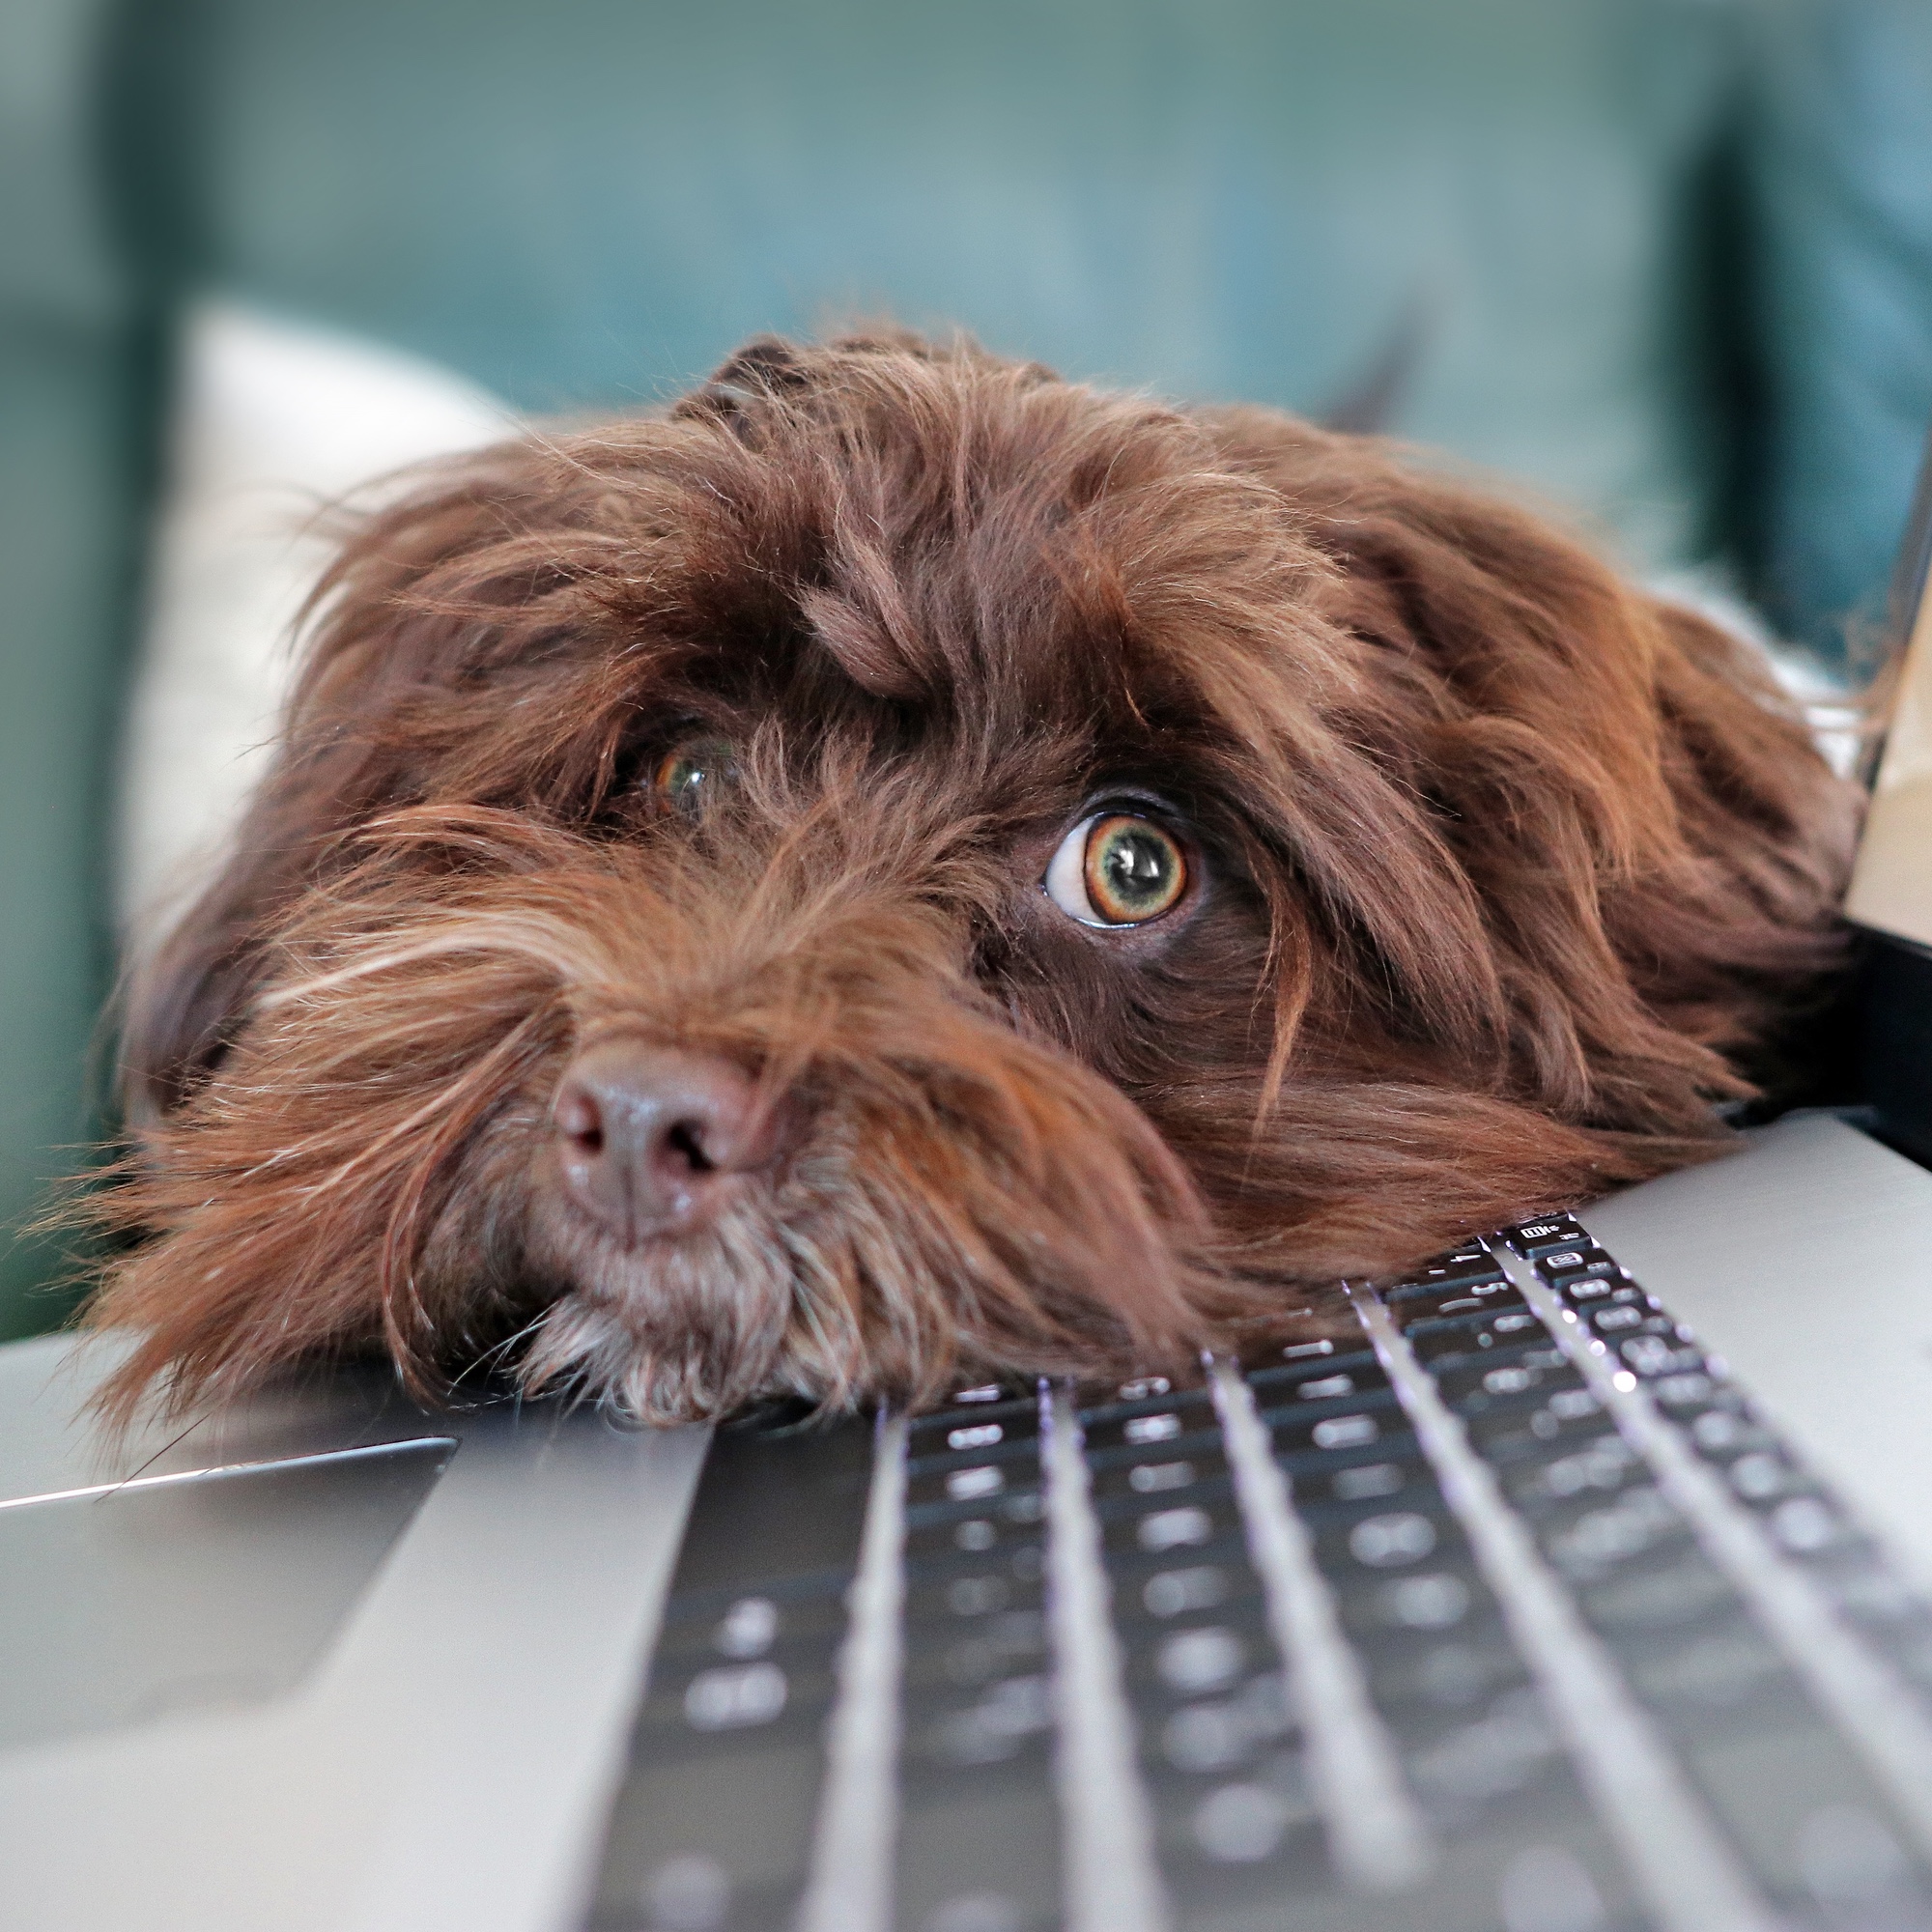 Foto: Brauner Hund, der seinen Kopf auf eine Laptop-Tastatur legt